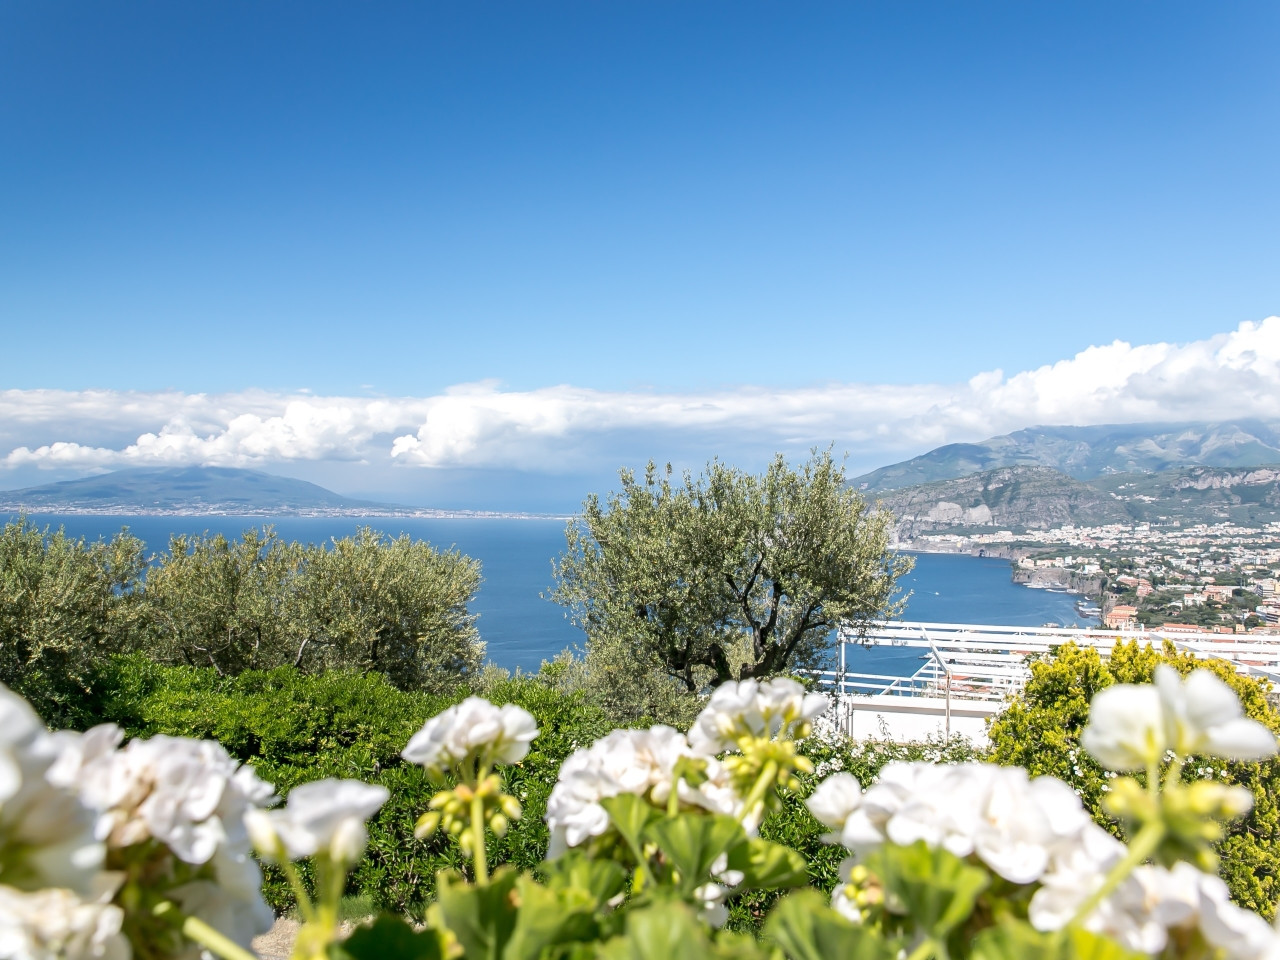 Visitare Sorrento - Escursioni a Sorrento - Visite a Sorrento - escursioni penisola sorrentina - escursioni hotel aminta